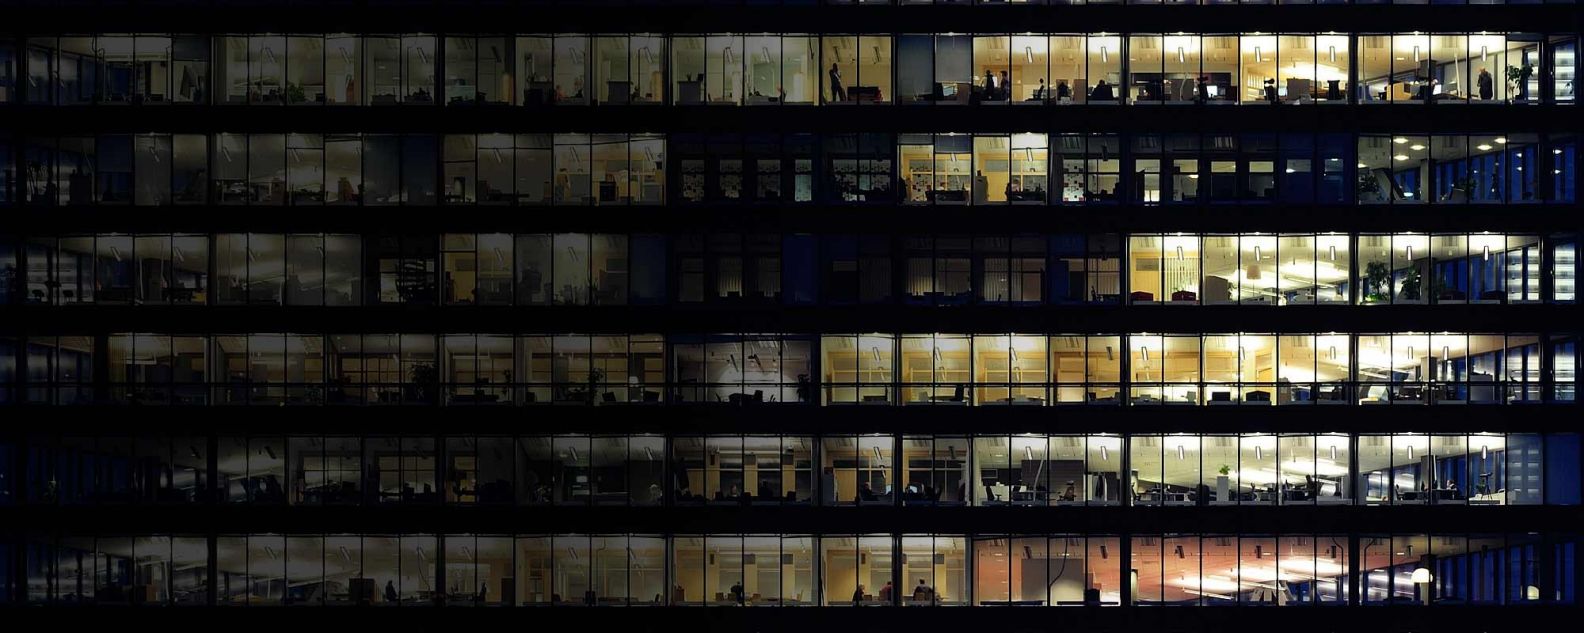 큰 건물의 여러 창문 클로즈업을 통해 보이는 사무실 안에서 사람들이 일하는 모습